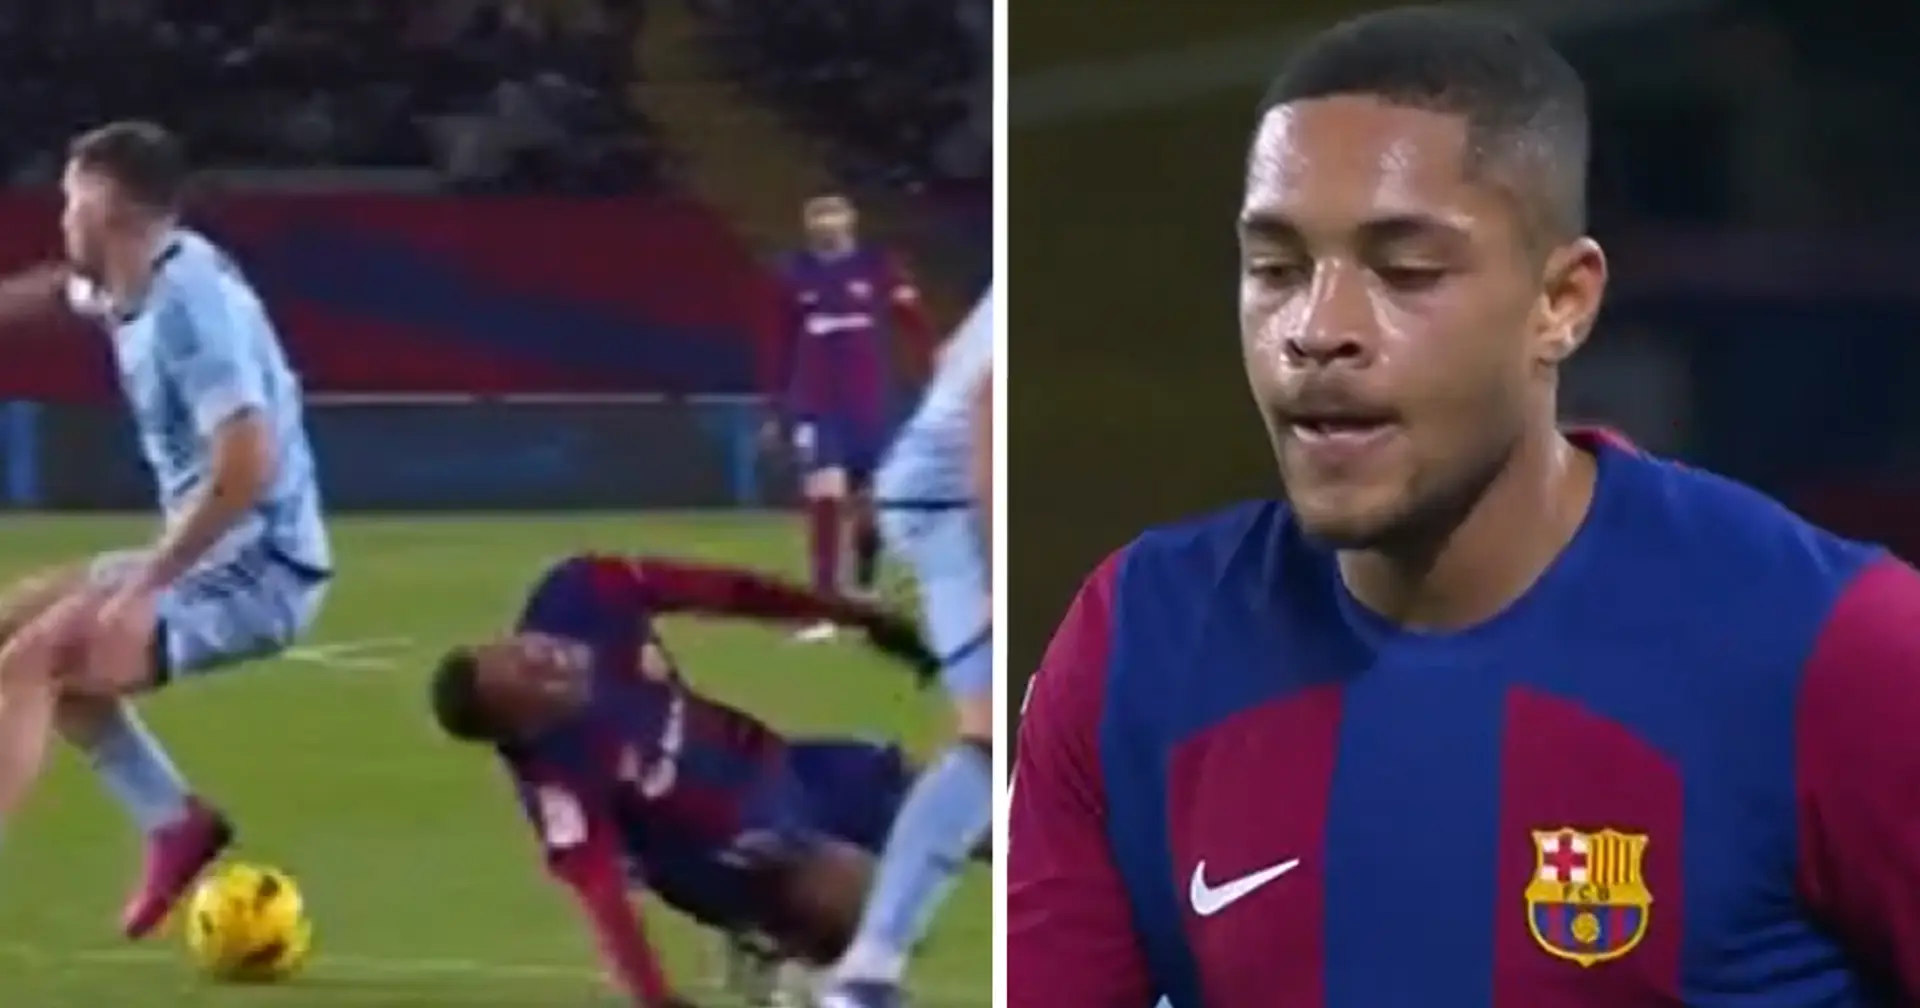 Visto: Vitor Roque sufre una entrada brutal tras anotar el gol de victoria del Barça, la reacción del árbitro es hilarante